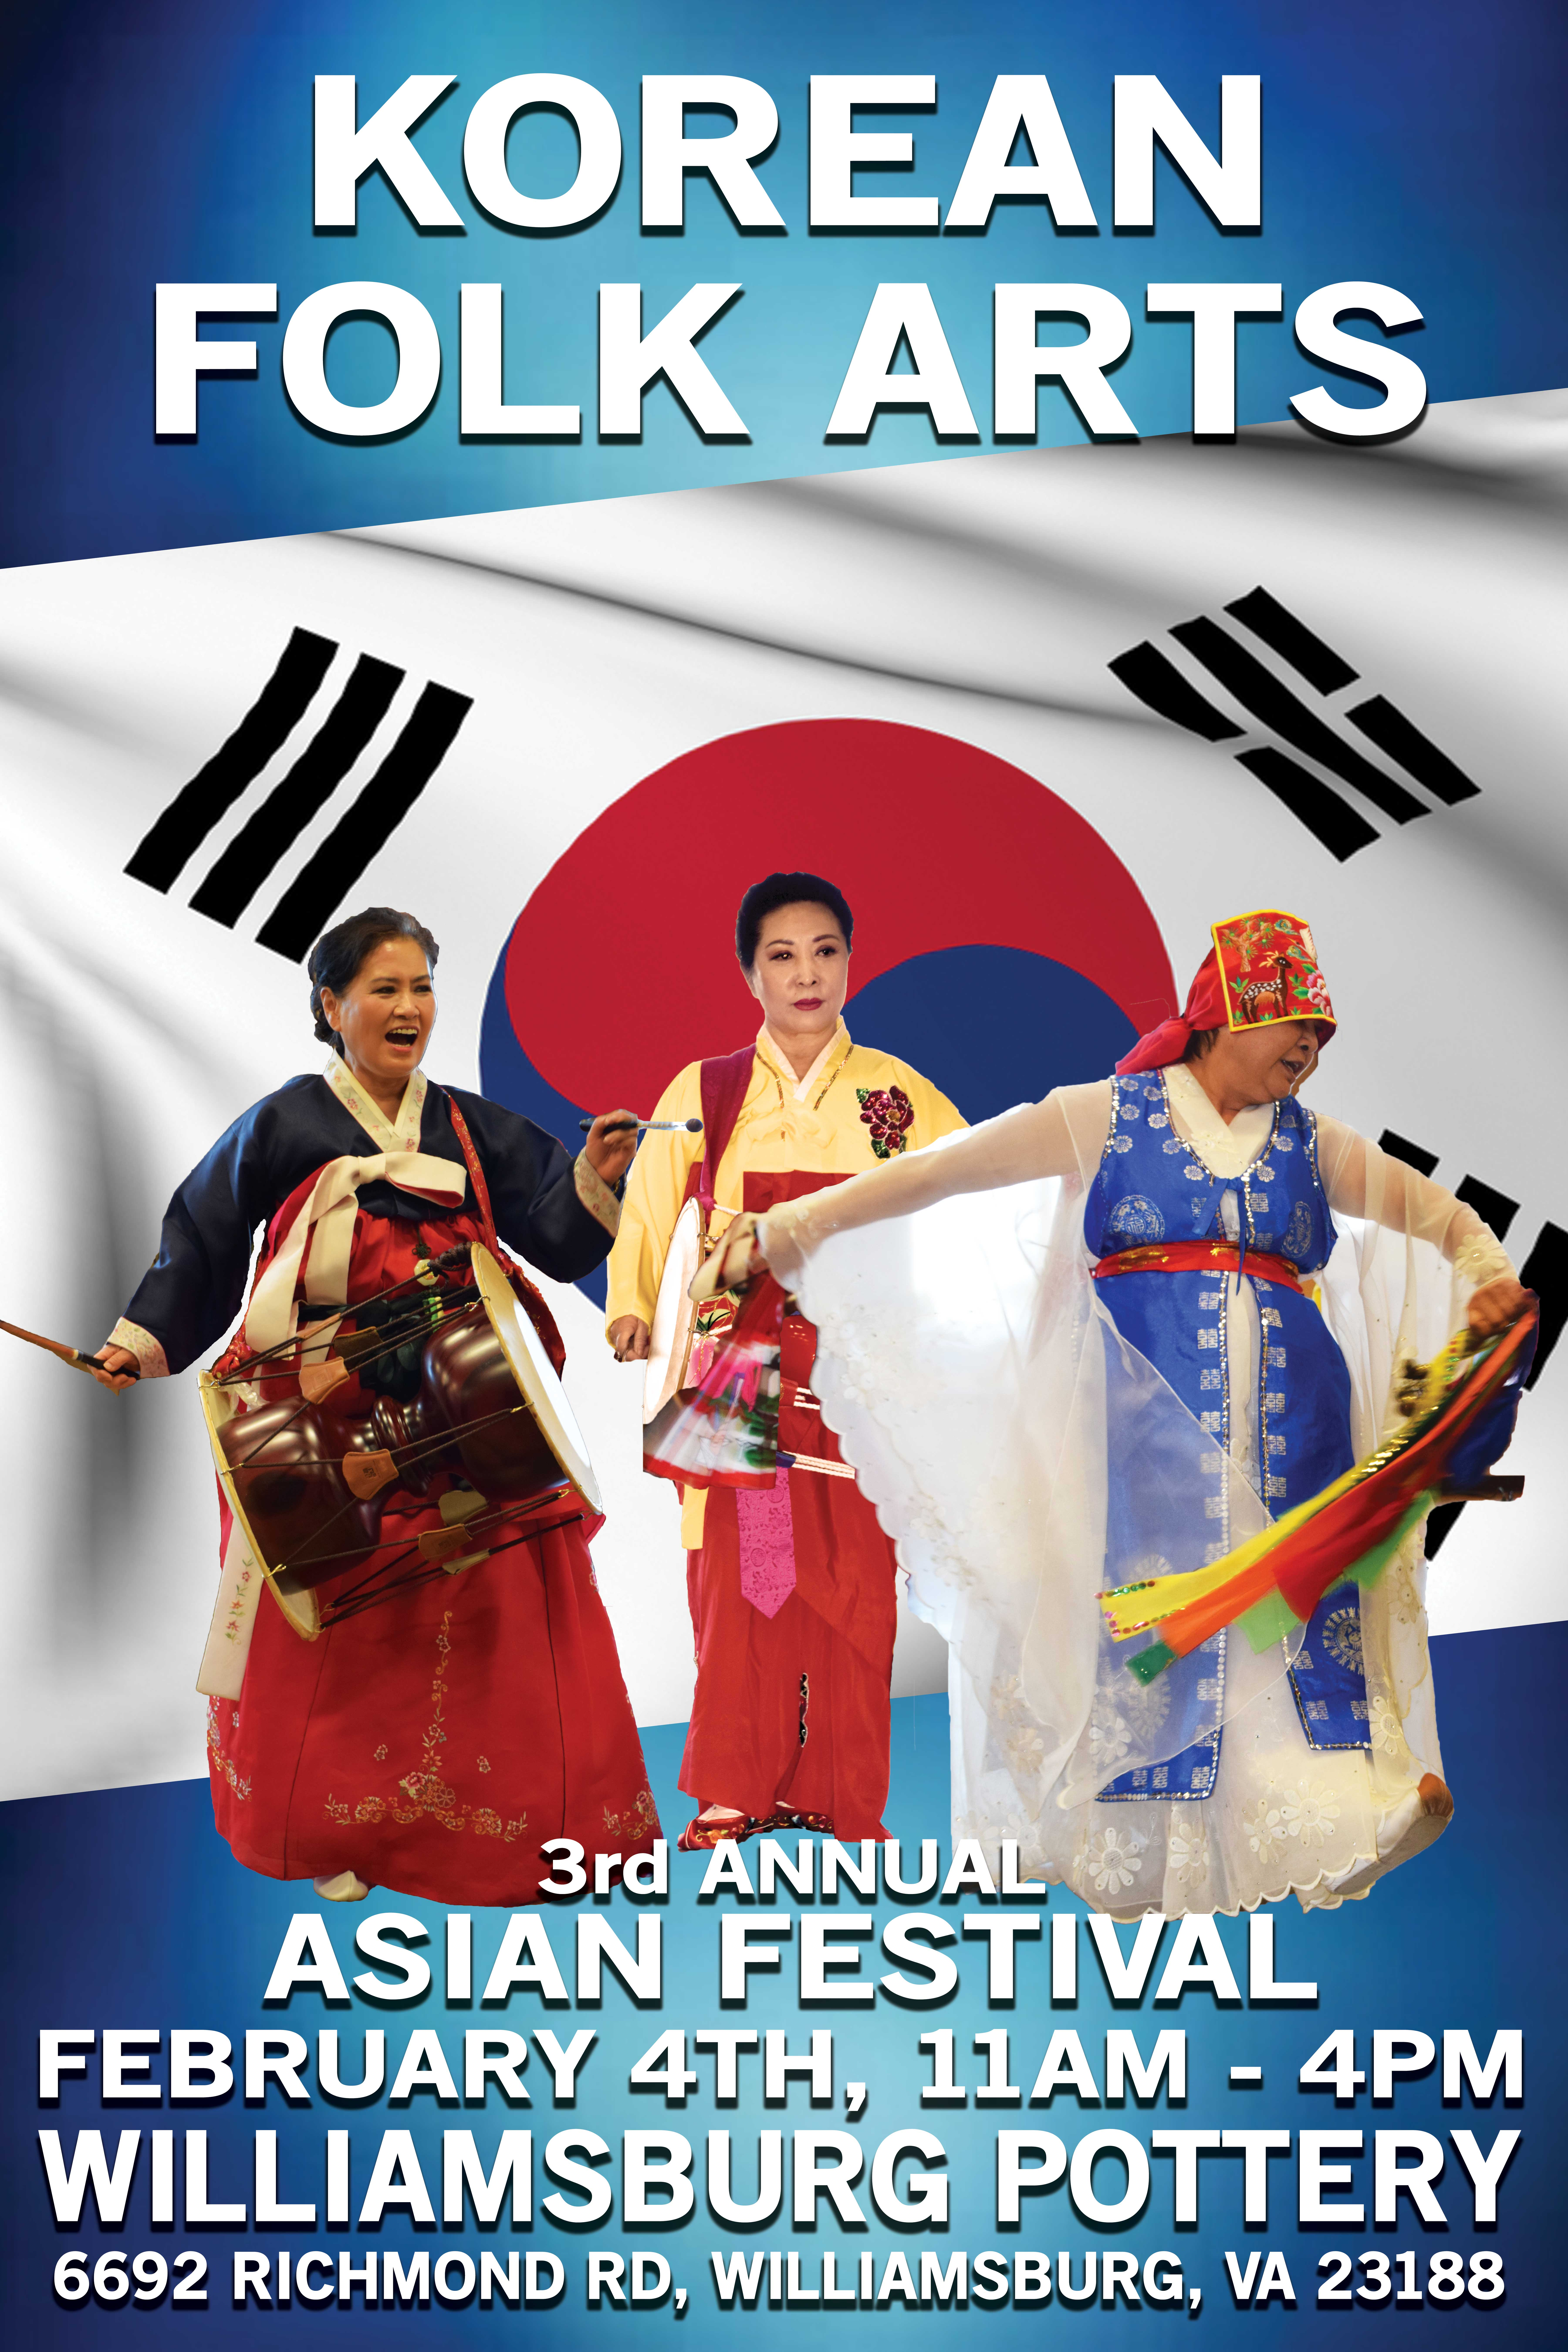 Korean Folk Arts